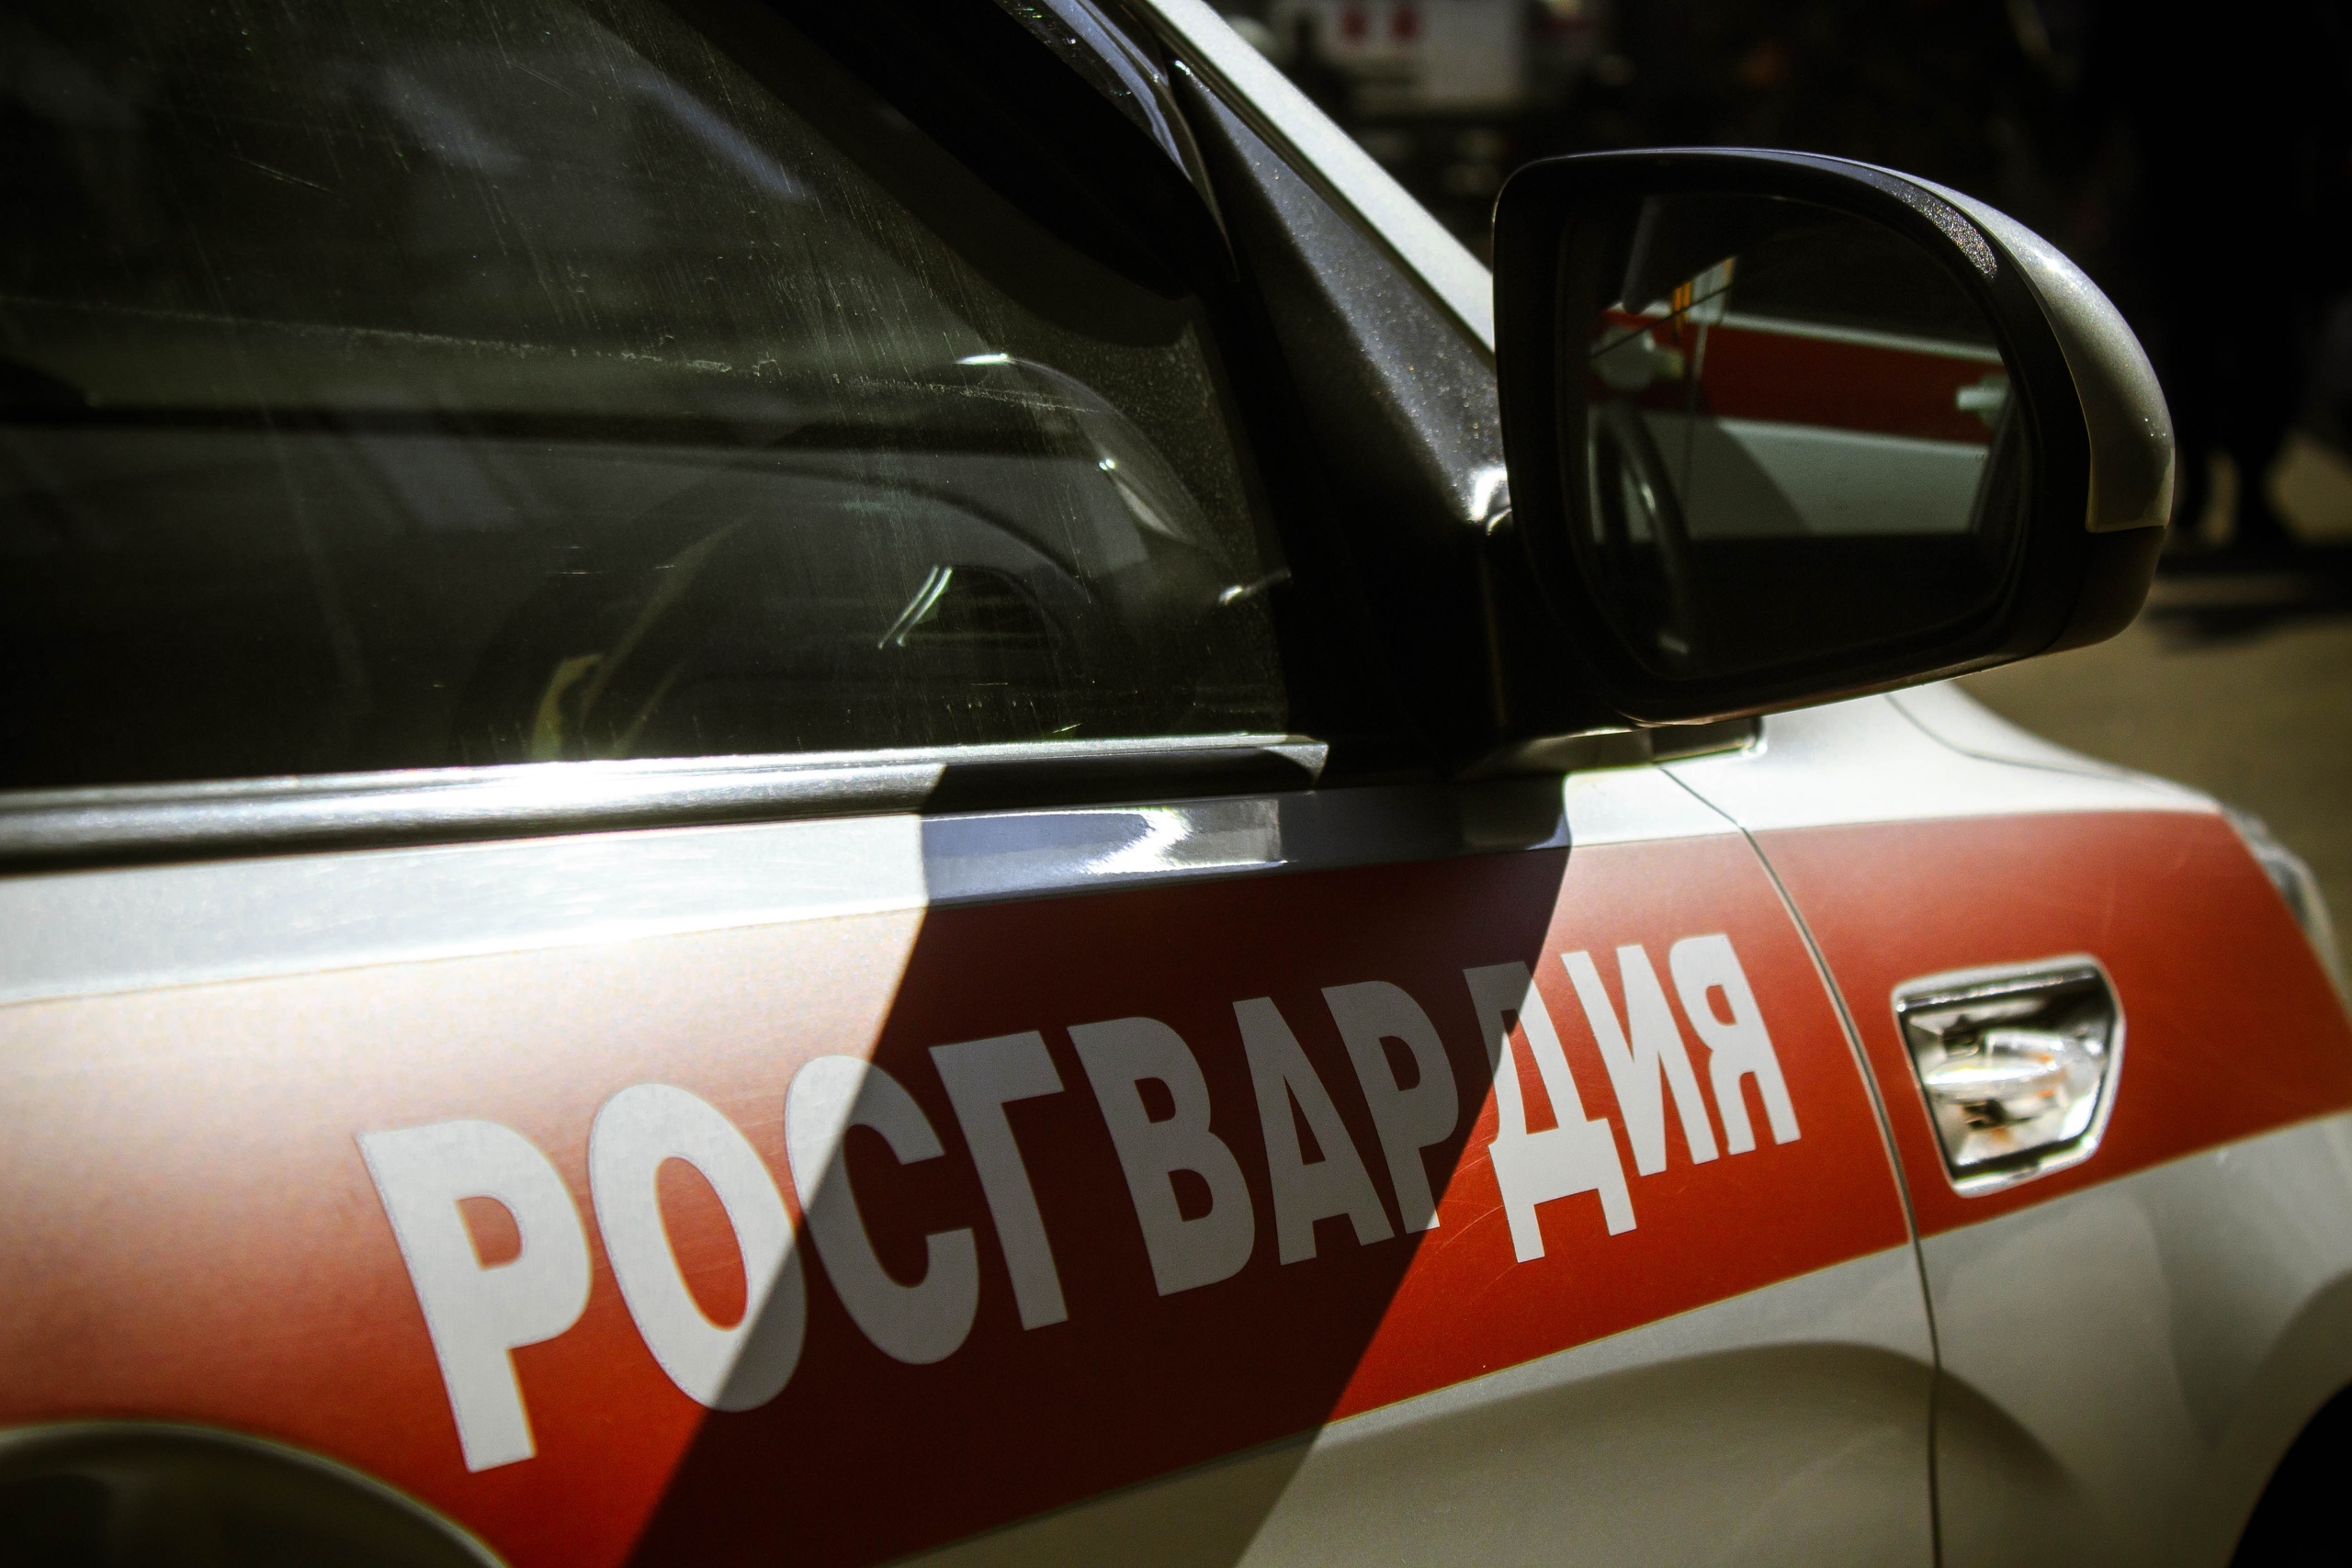 Два юнца в Петрозаводске попали в полицию за попытку украсть ароматизатор с шоколадкой